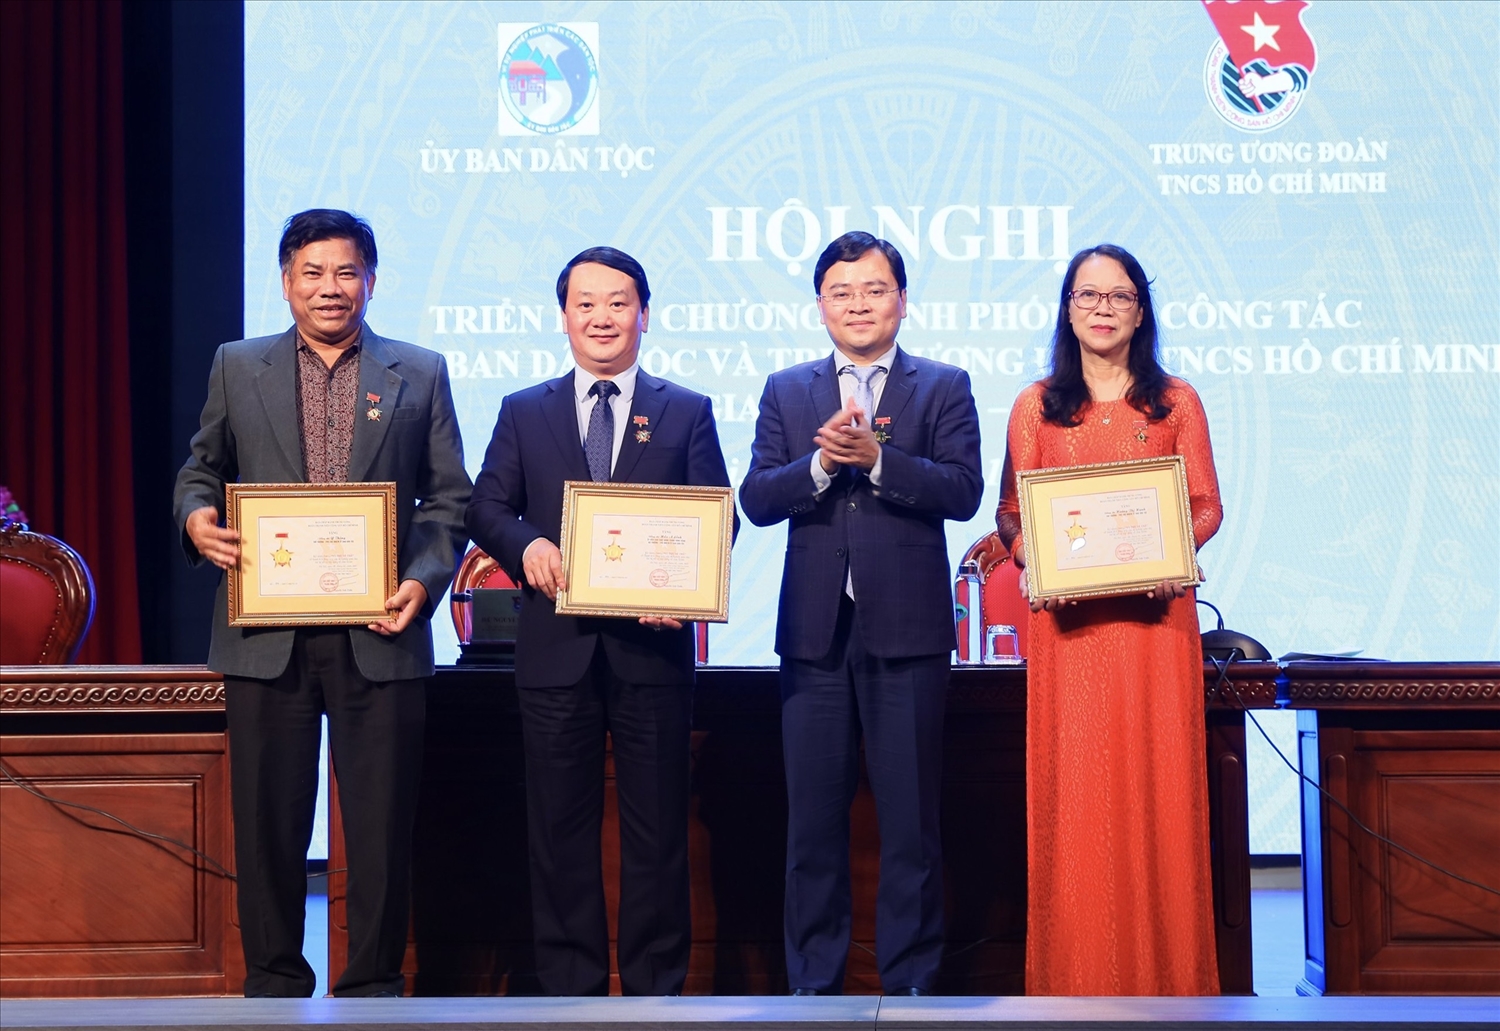 Bí thư Thứ nhất Trung ương Đoàn TNCS Hồ Chí Minh Nguyễn Anh Tuấn trao tặng Kỷ niệm chương “Vì thế hệ trẻ” cho Lãnh đạo UBDT